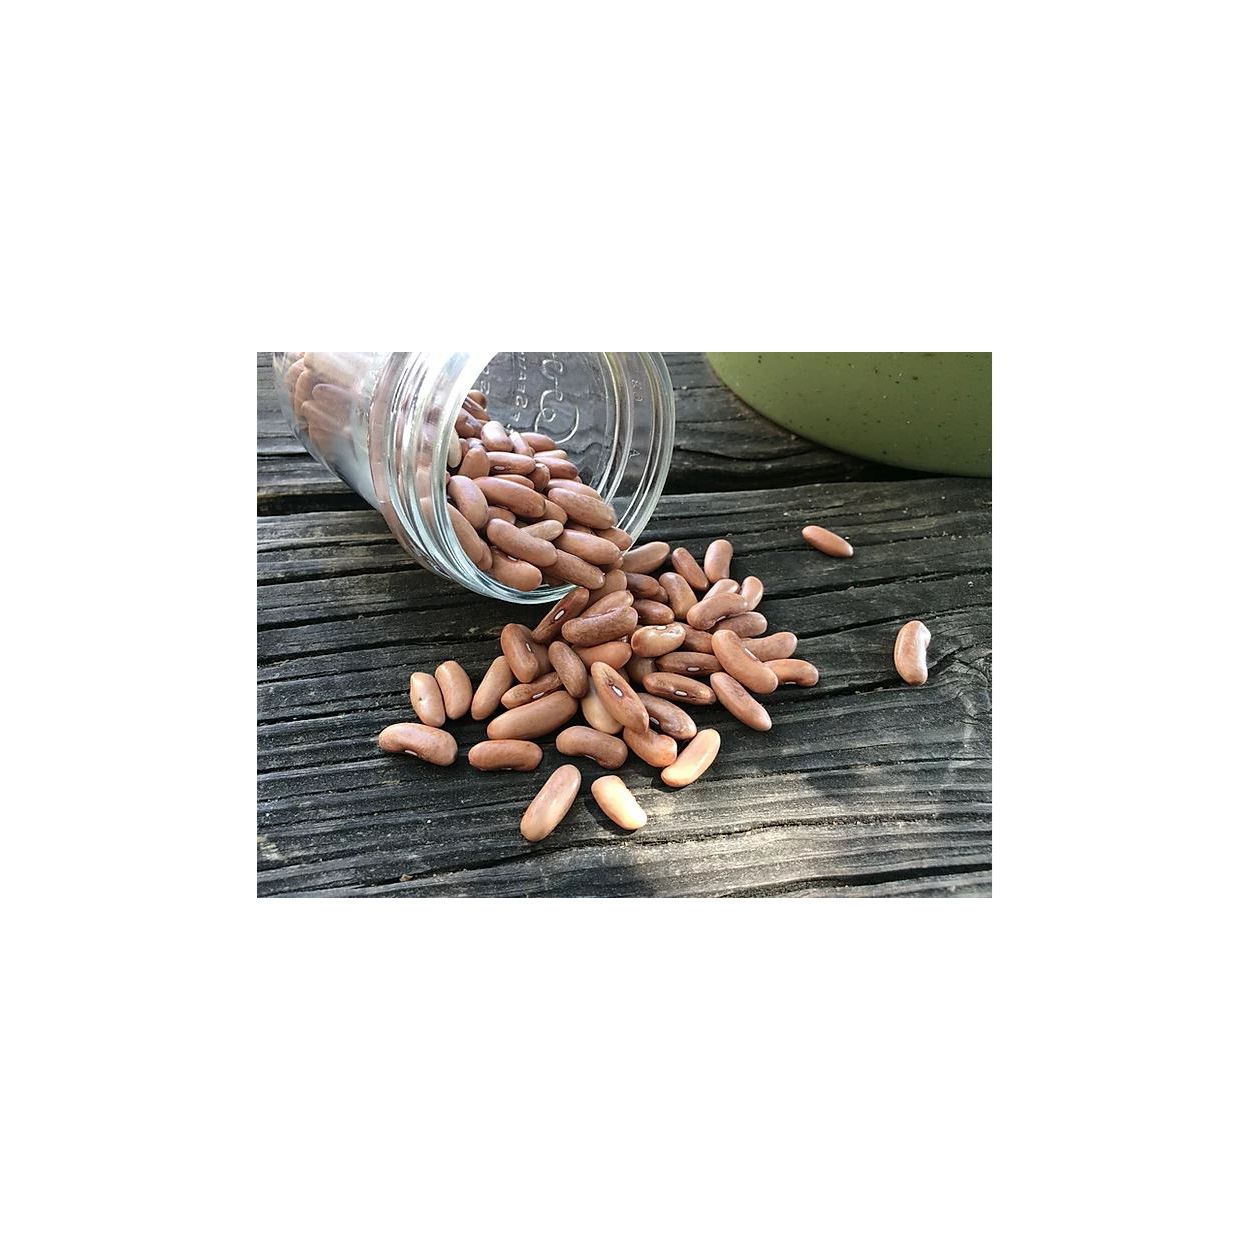 Brim Seed Co. - Contender Bush Bean Seed